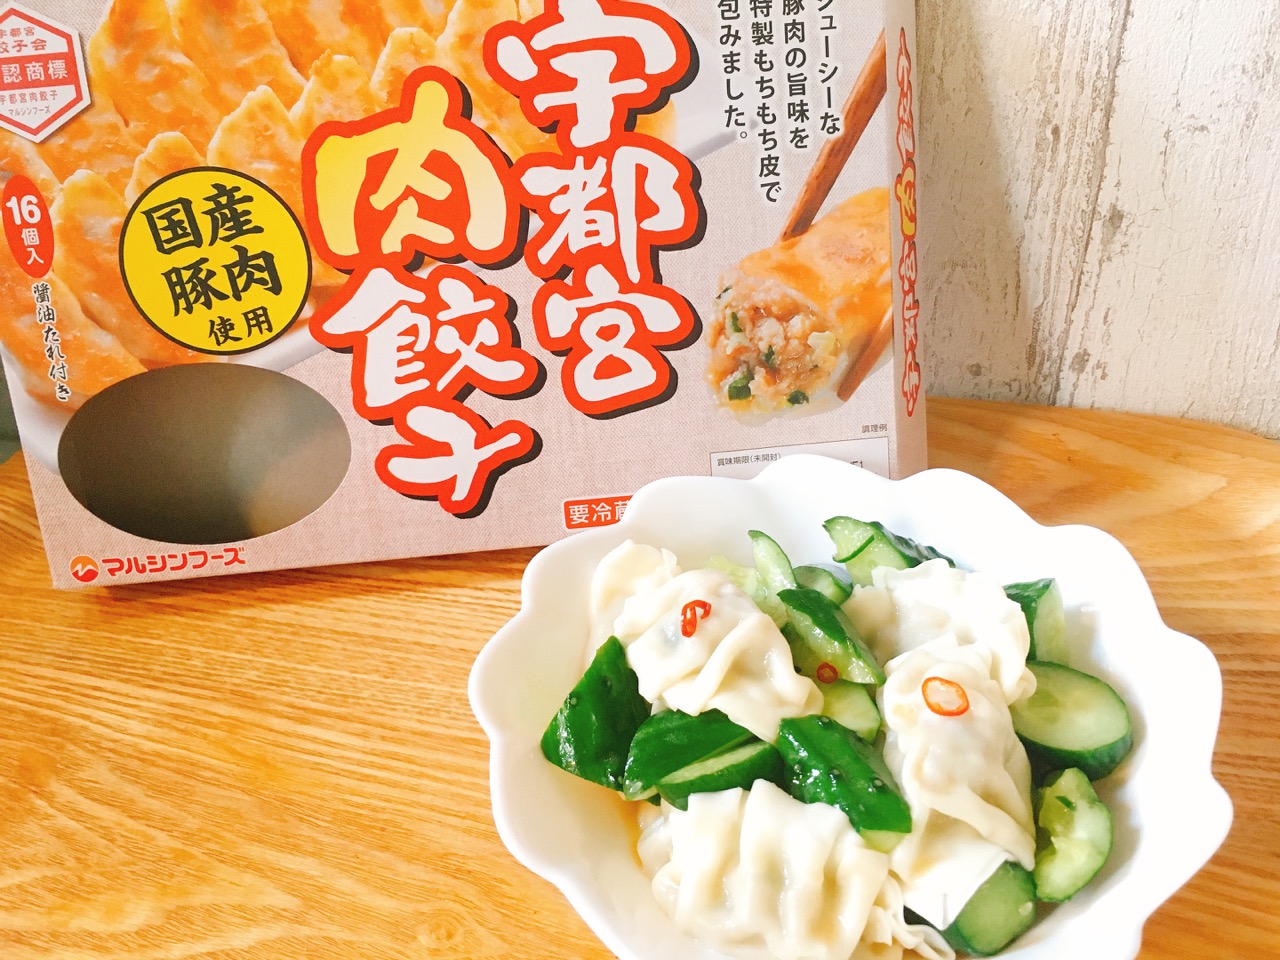 「宇都宮肉餃子」の新しい食べ方発見!! きゅうりとごま油で和えるさっぱりメニュー作ってみた♪ #アレンジレシピ